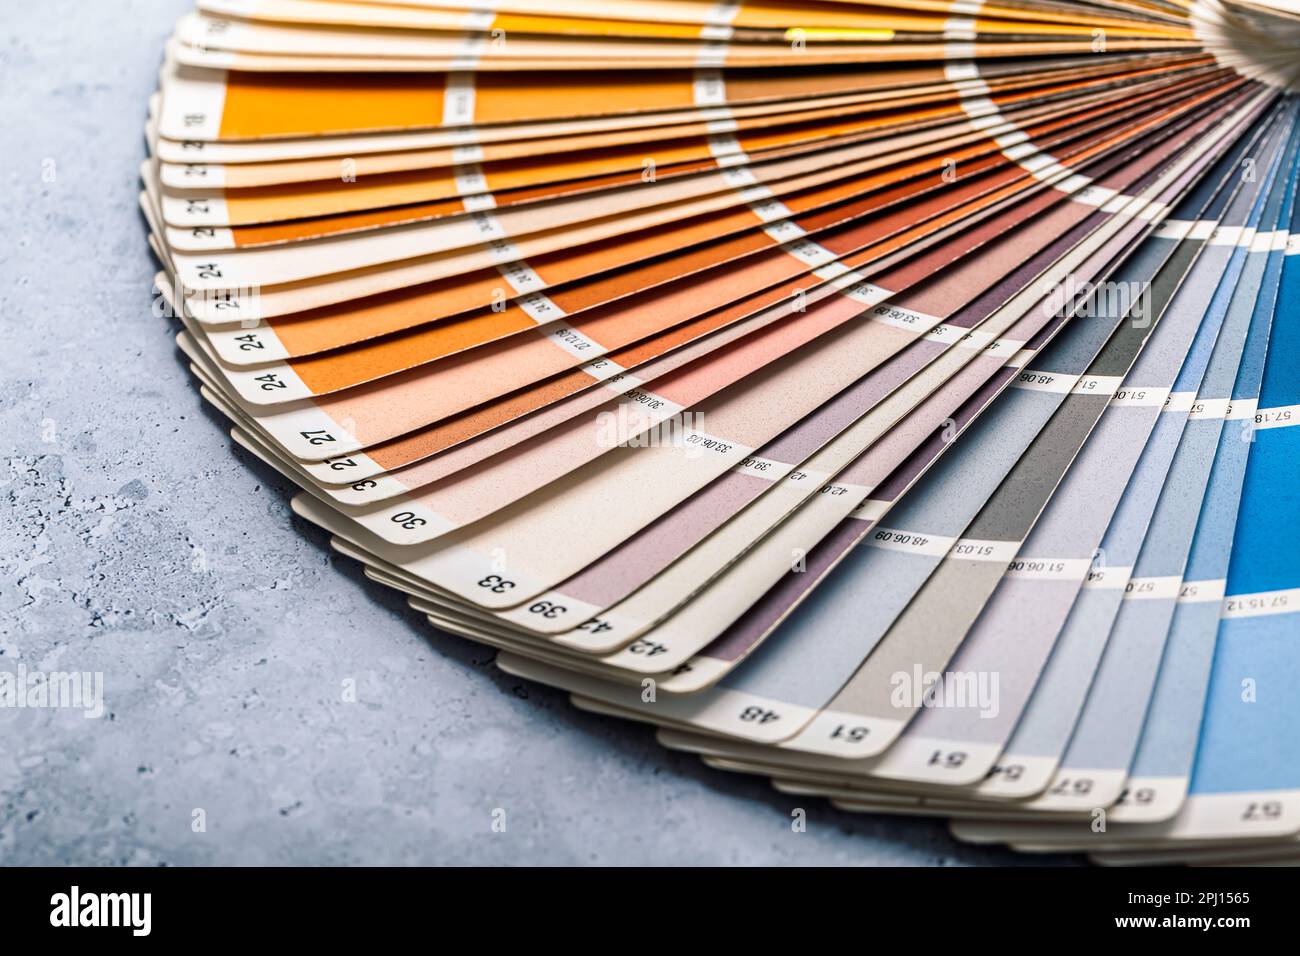 Industrieller Farbpalettenführer des Katalogs mit Farbmustern auf grauem Hintergrund, selektiver Fokus Stockfoto